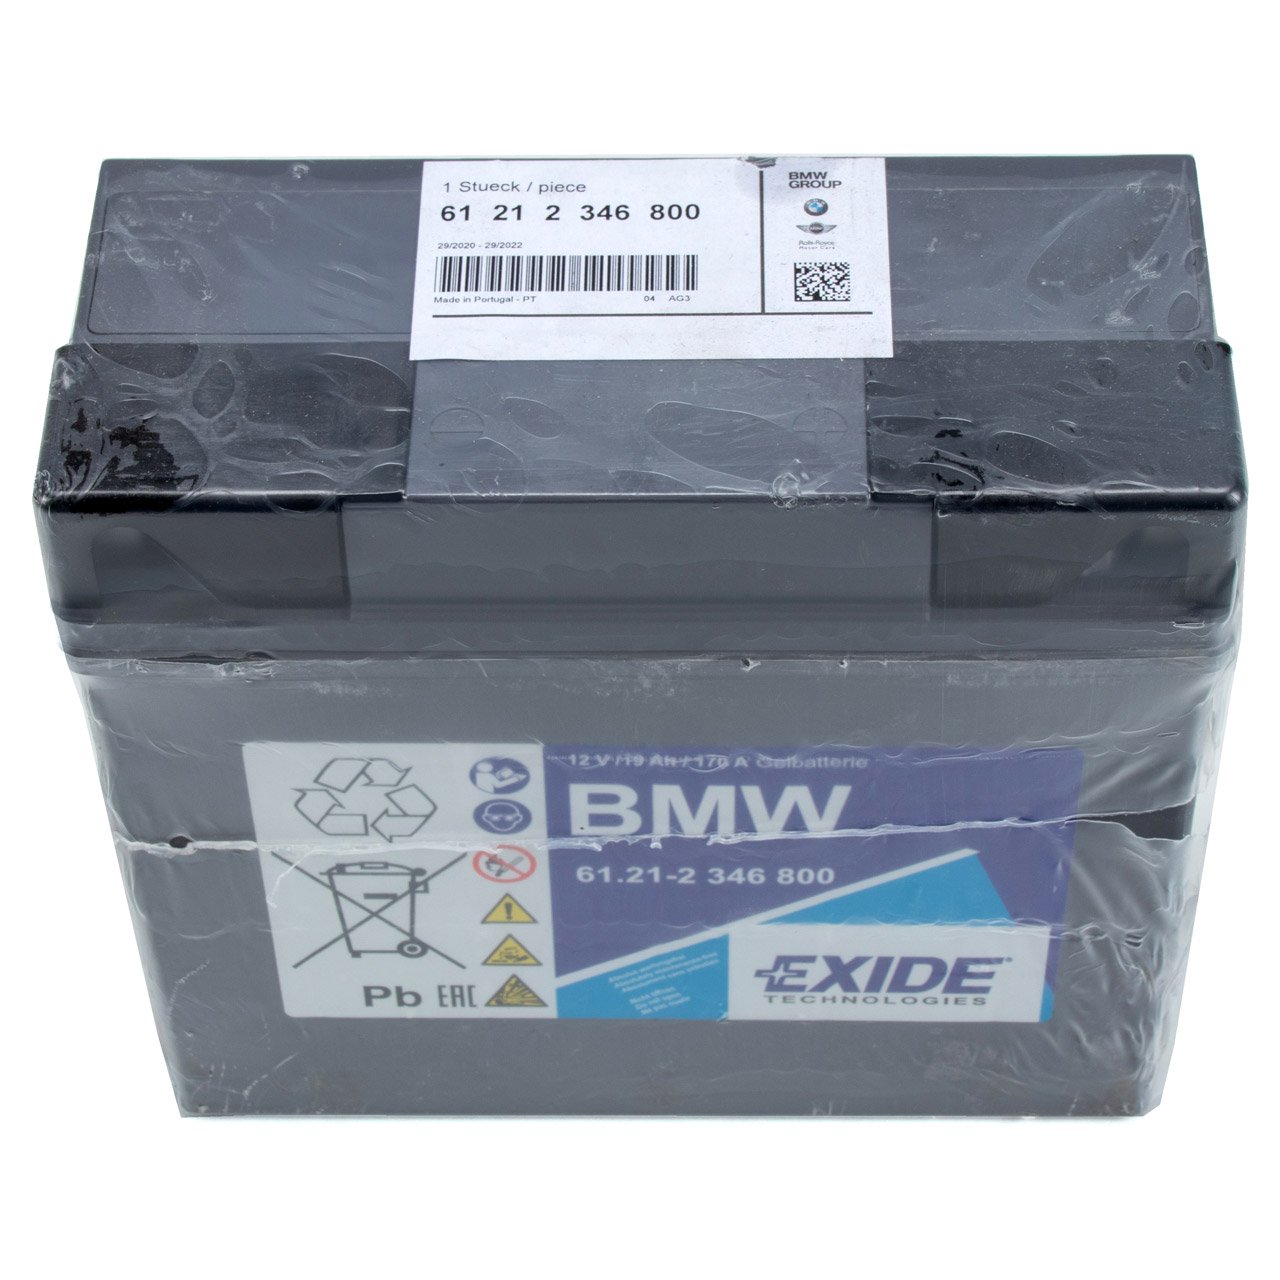 ORIGINAL BMW EXIDE GEL GEL12-19 Motorrad Batterie 12V 19Ah 61212346800